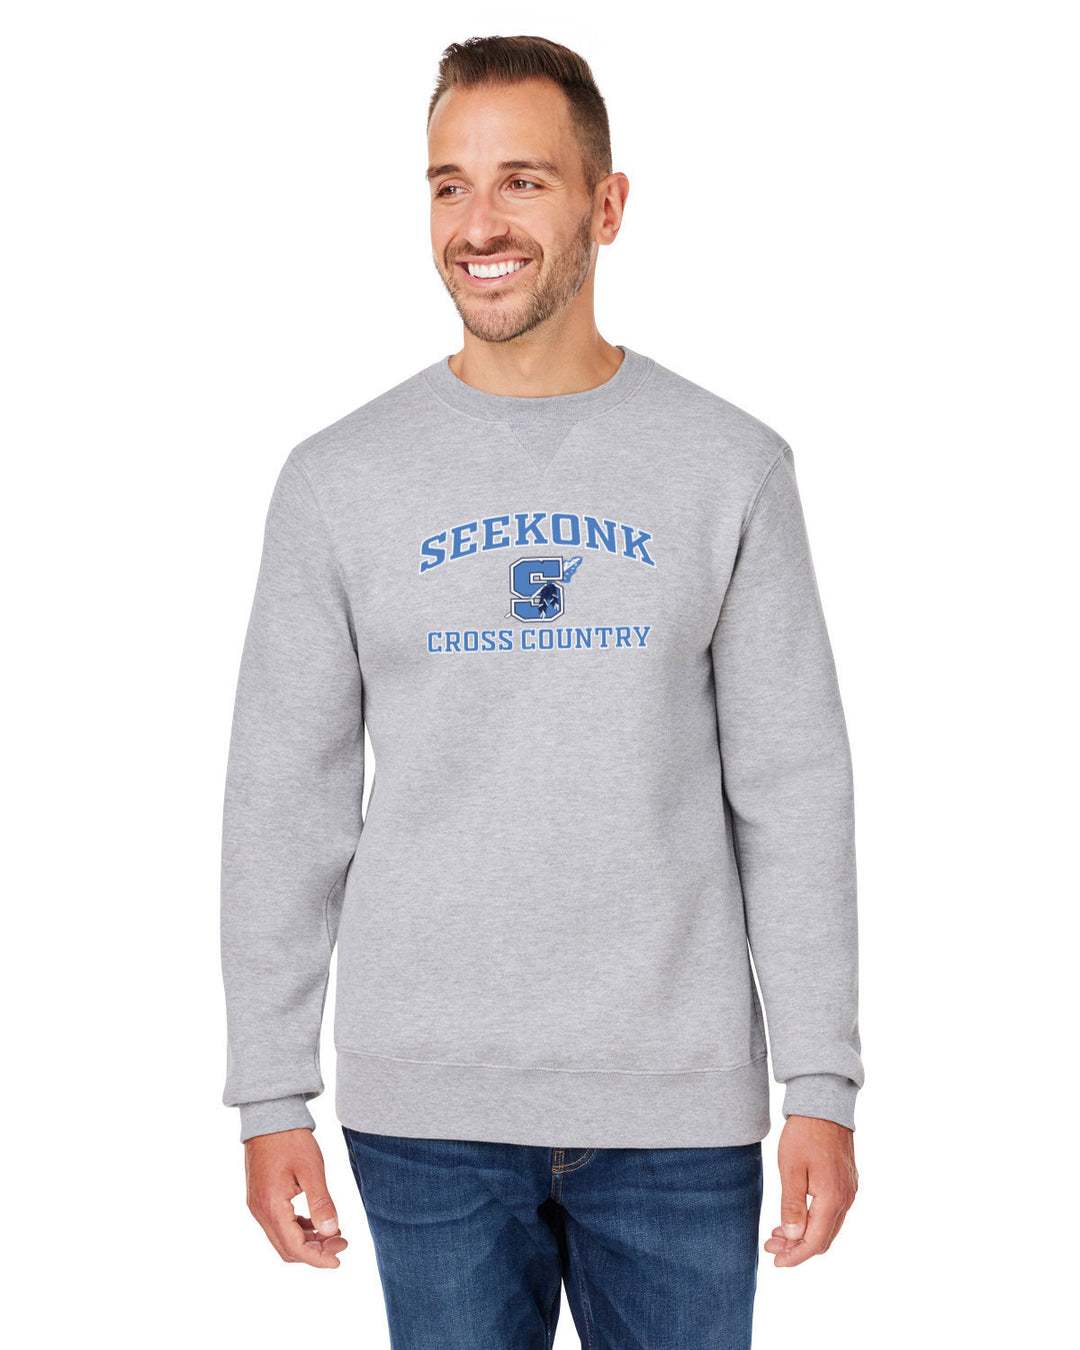 Seekonk Cross Country Unisex Premium Fleece Sweatshirt (8424JA)